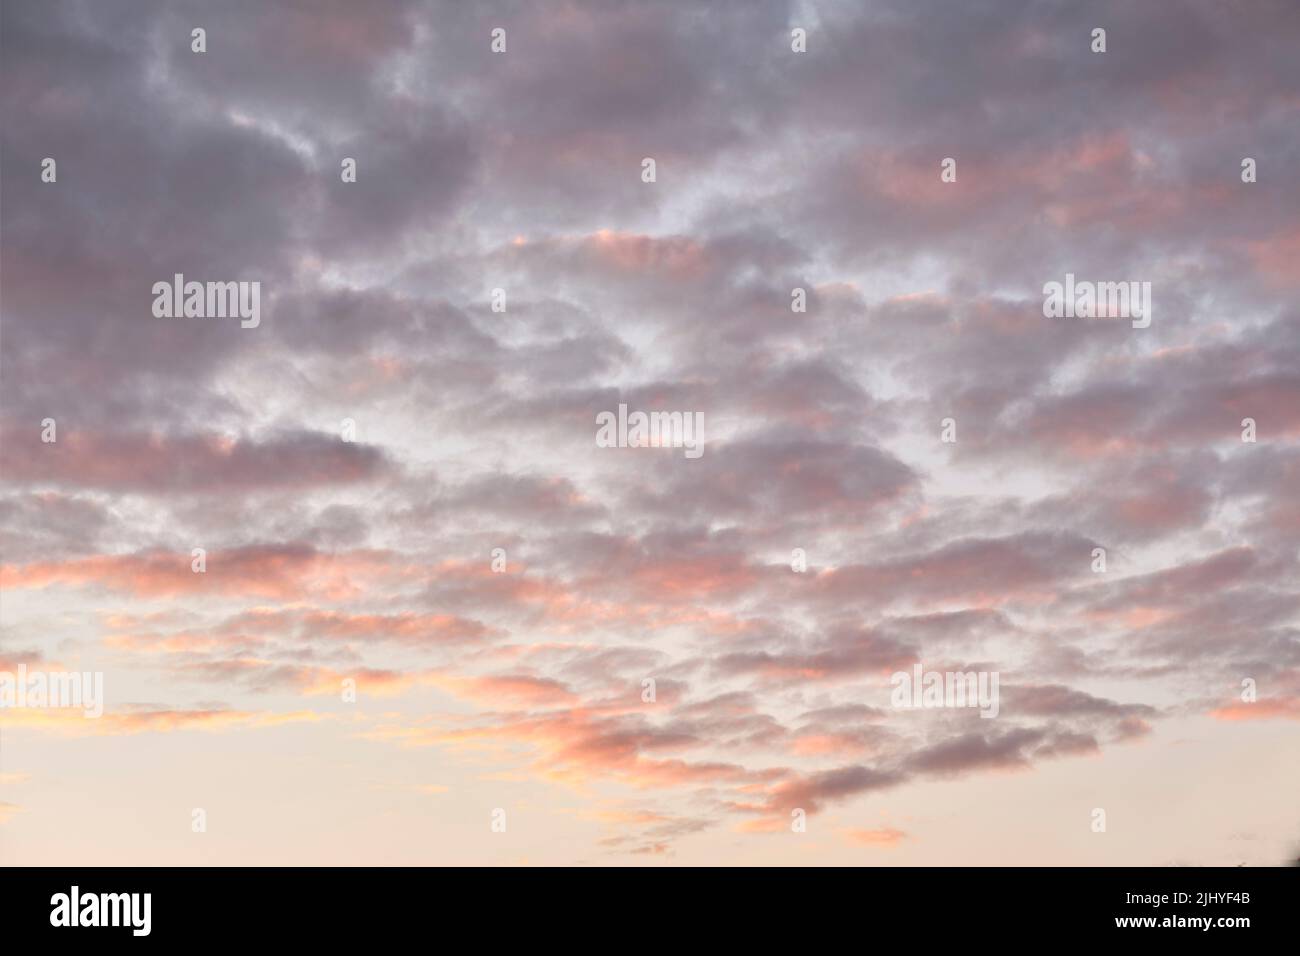 Copia lo spazio delle nuvole di altocumuli in un cielo osceno al crepuscolo. Panoramica panoramica panoramica di un suggestivo paesaggio nuvoloso e sfondo tuono all'alba o al tramonto Foto Stock